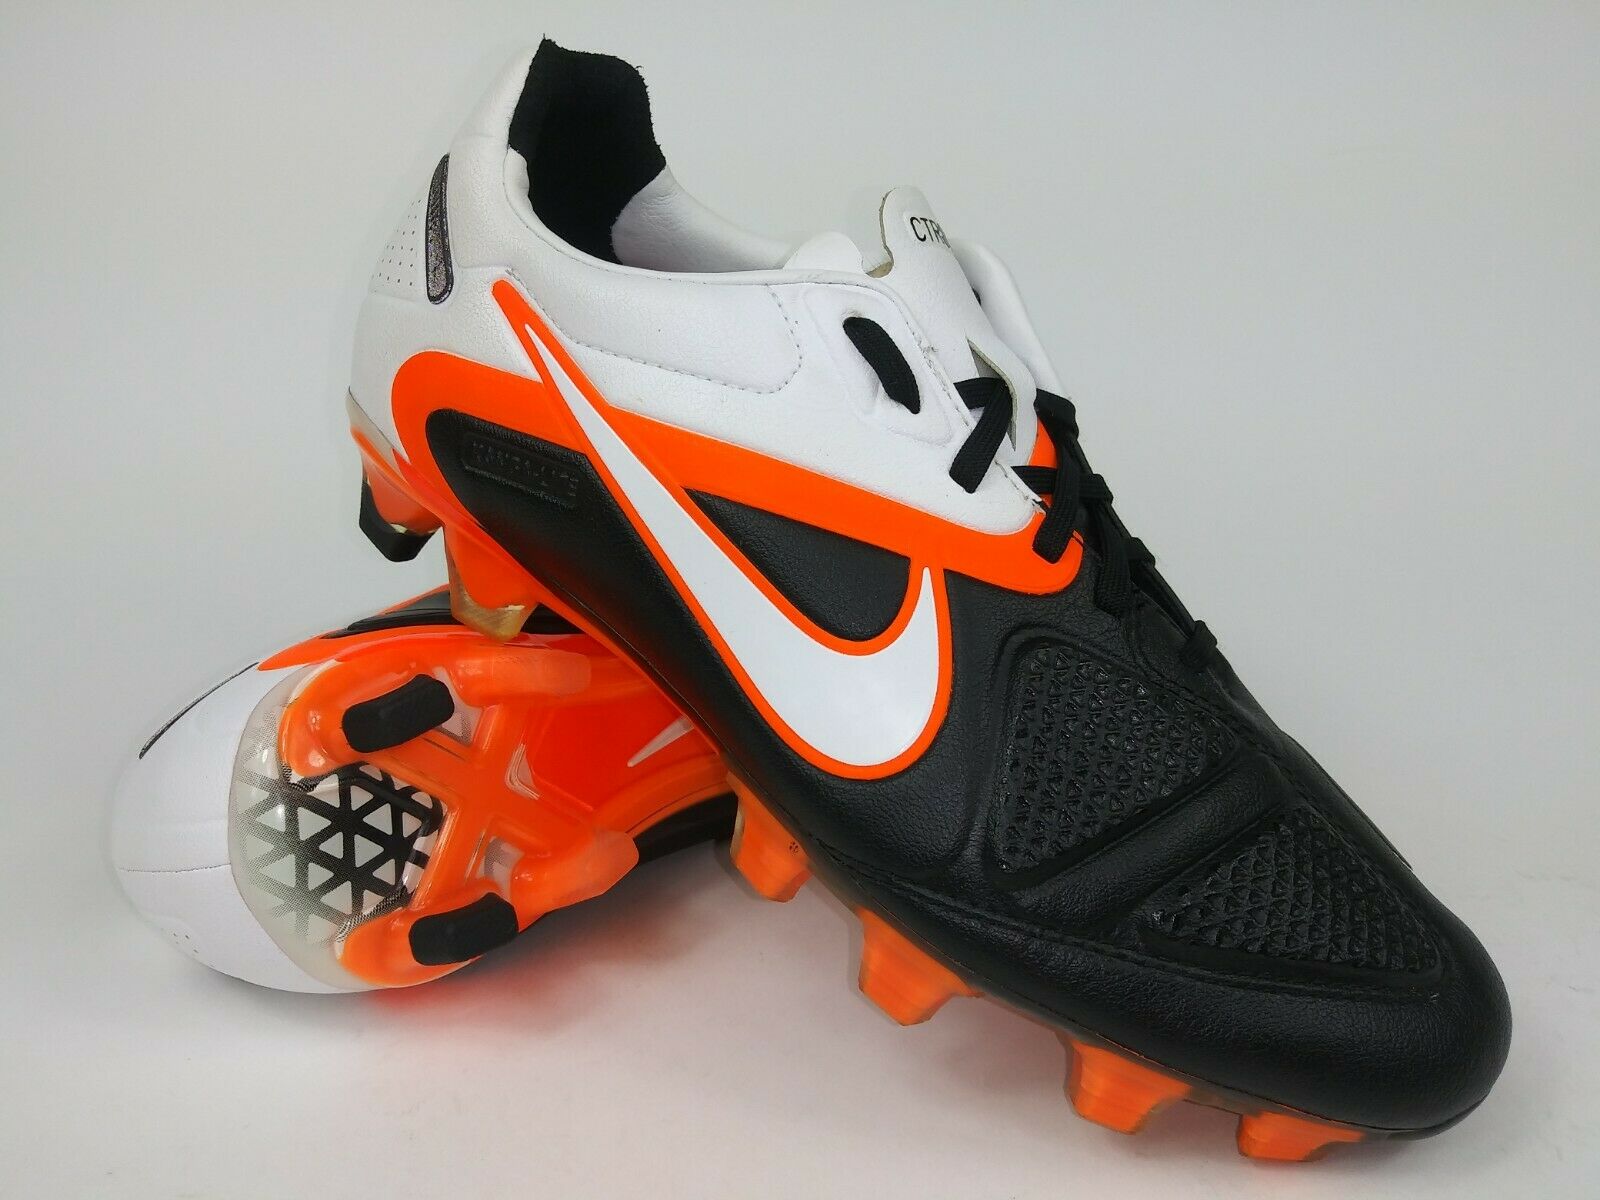 Nike CTR 360 MAESTRI ll FG White Orange – Footwear